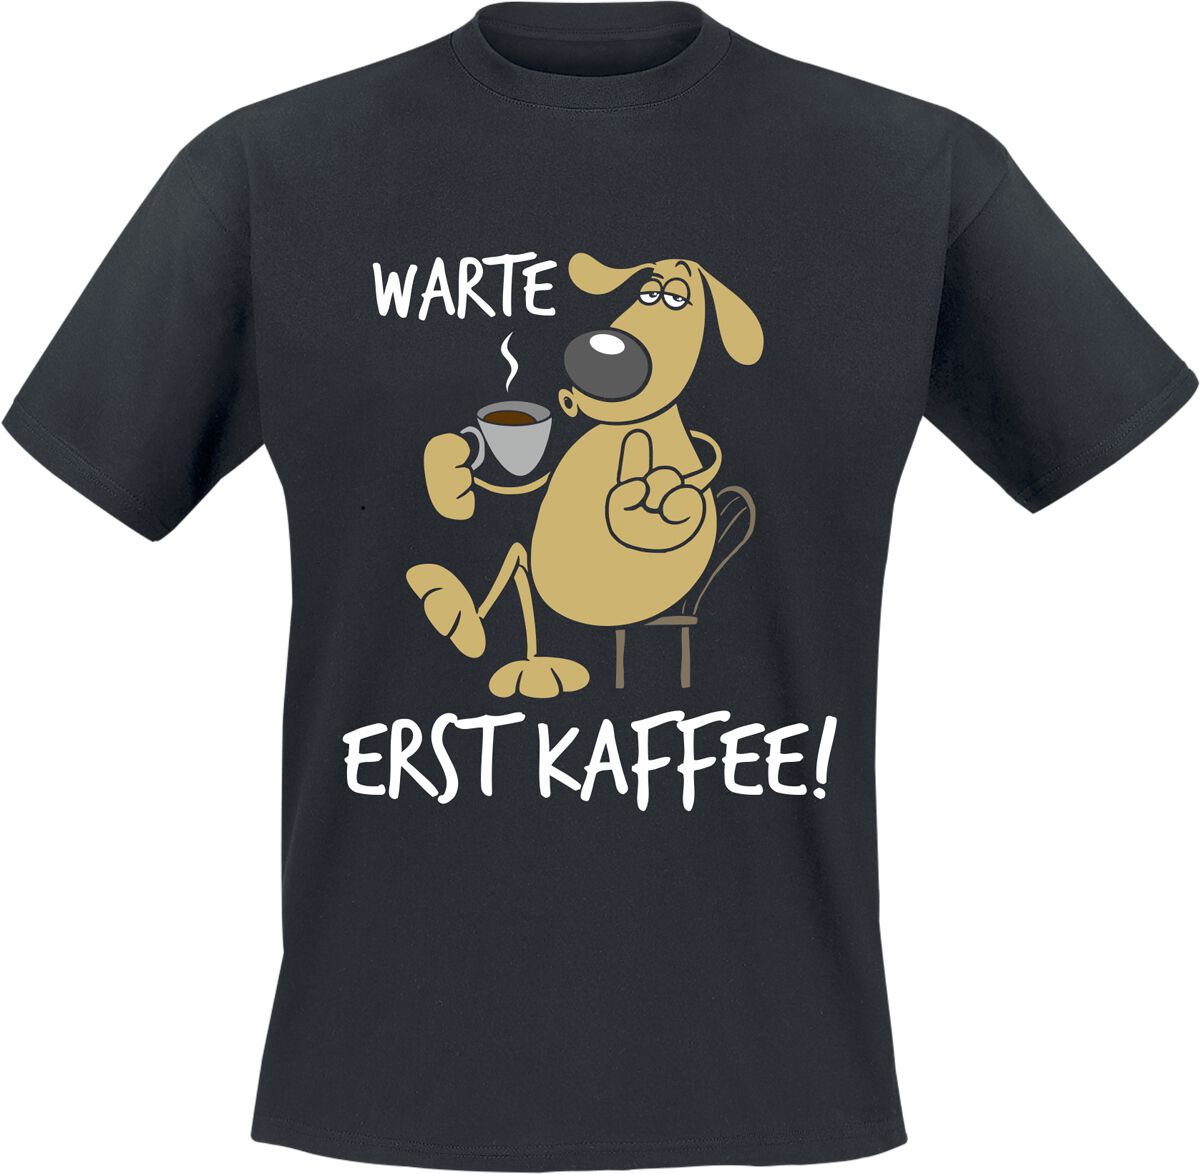 Tierisch T-Shirt - Warte - Erst Kaffee! - L bis 3XL - für Männer - Größe L - schwarz